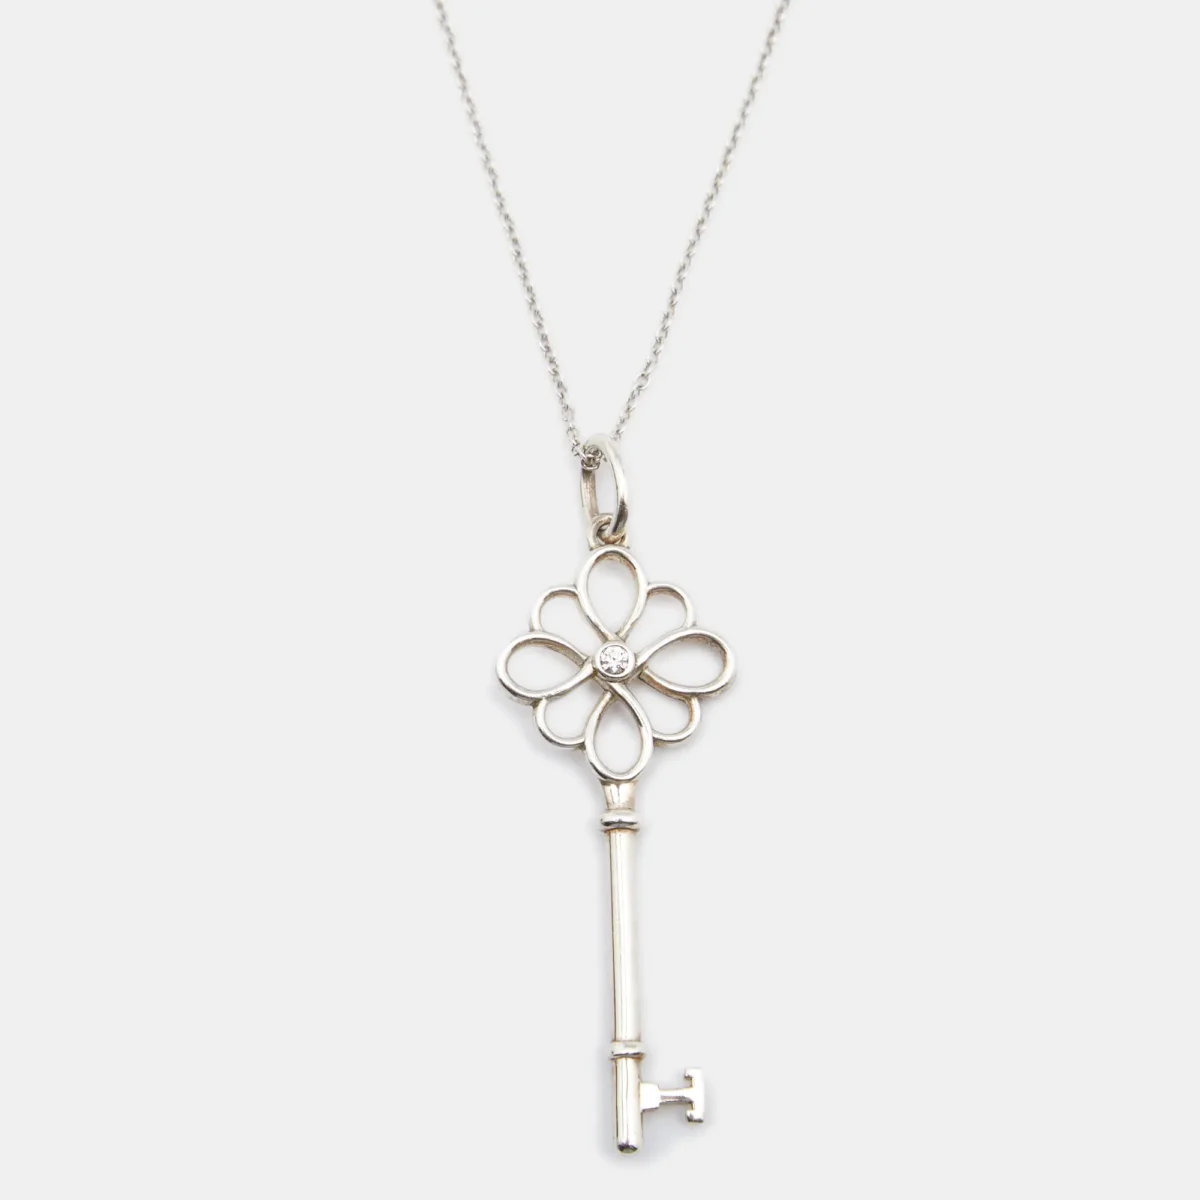 Tiffany key used